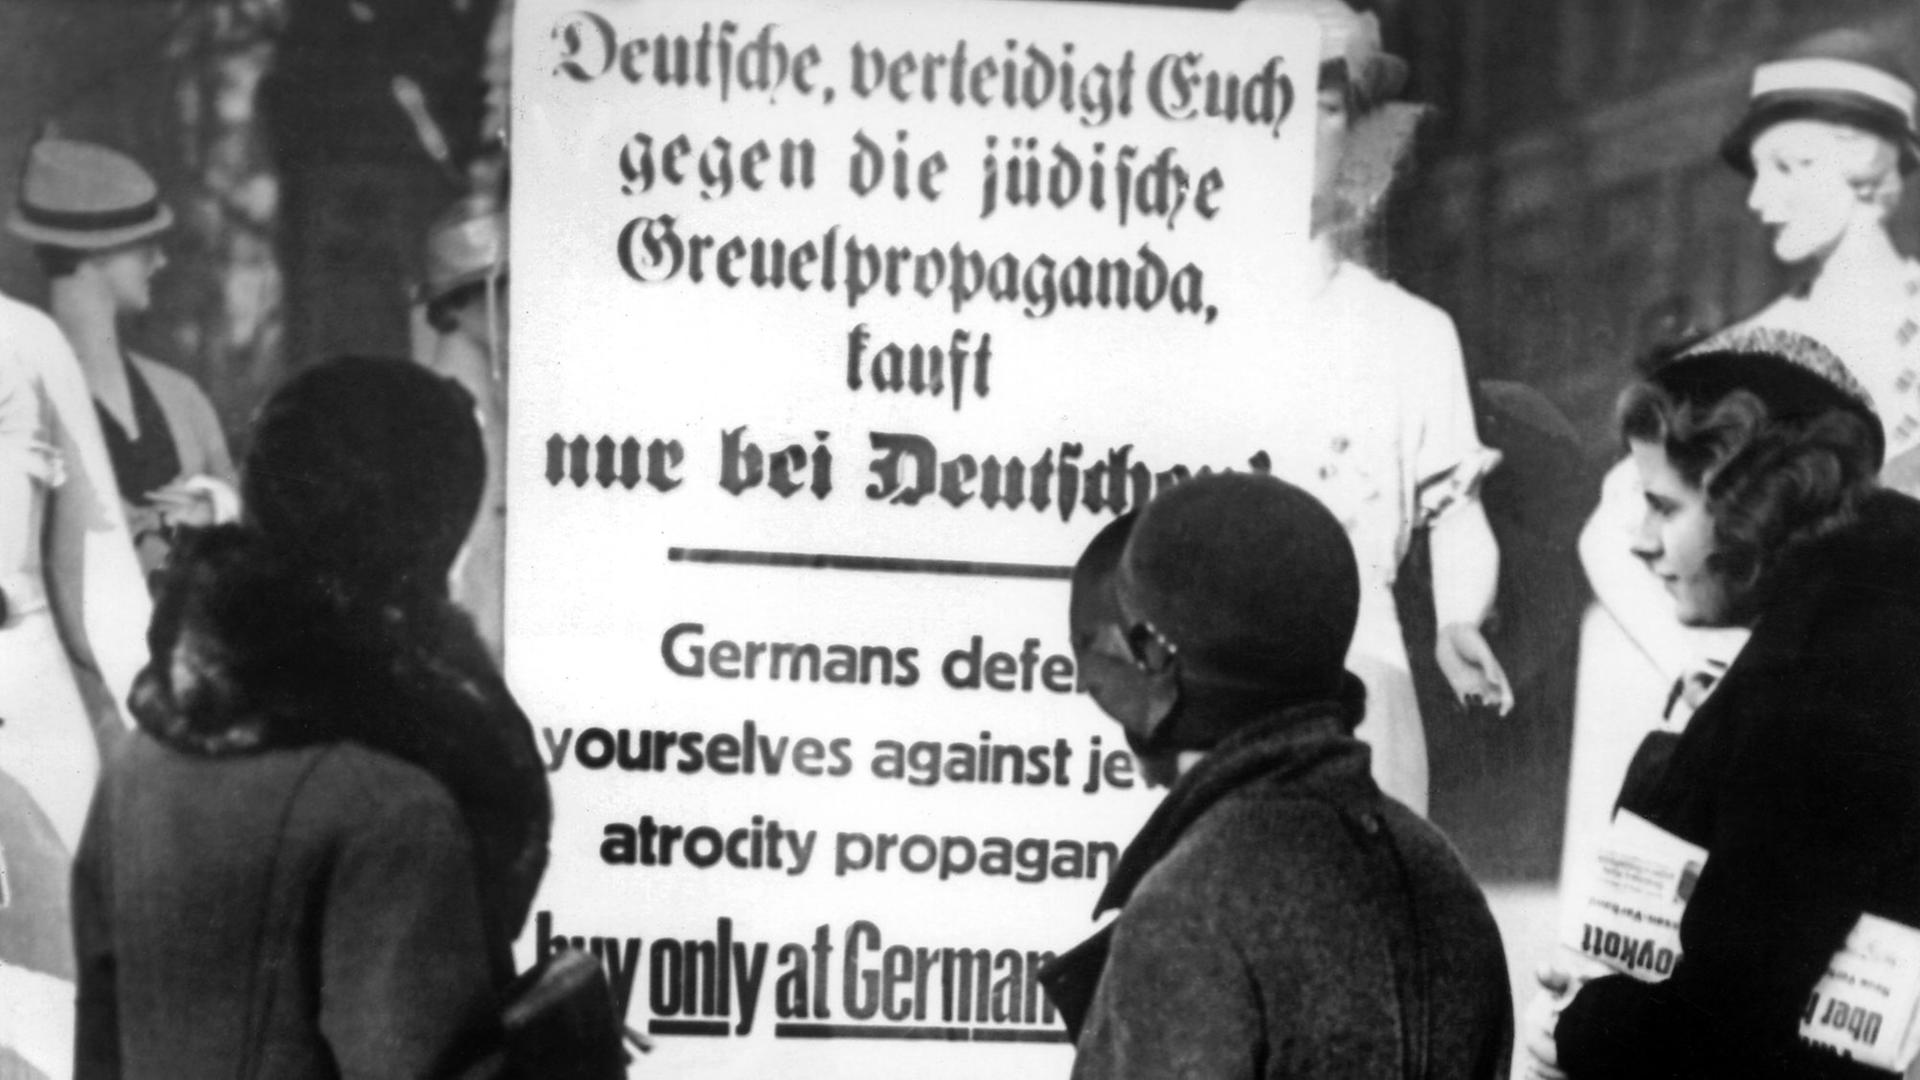 Drei deutsche Frauen lesen im April 1933 ein Plakat am Schaufenster eines Geschäfts, das zum Boykott von jüdischen Geschäften aufruft: "Deutsche, verteidigt Euch gegen die jüdische Greuelpropaganda, kauft nur bei Deutschen!"